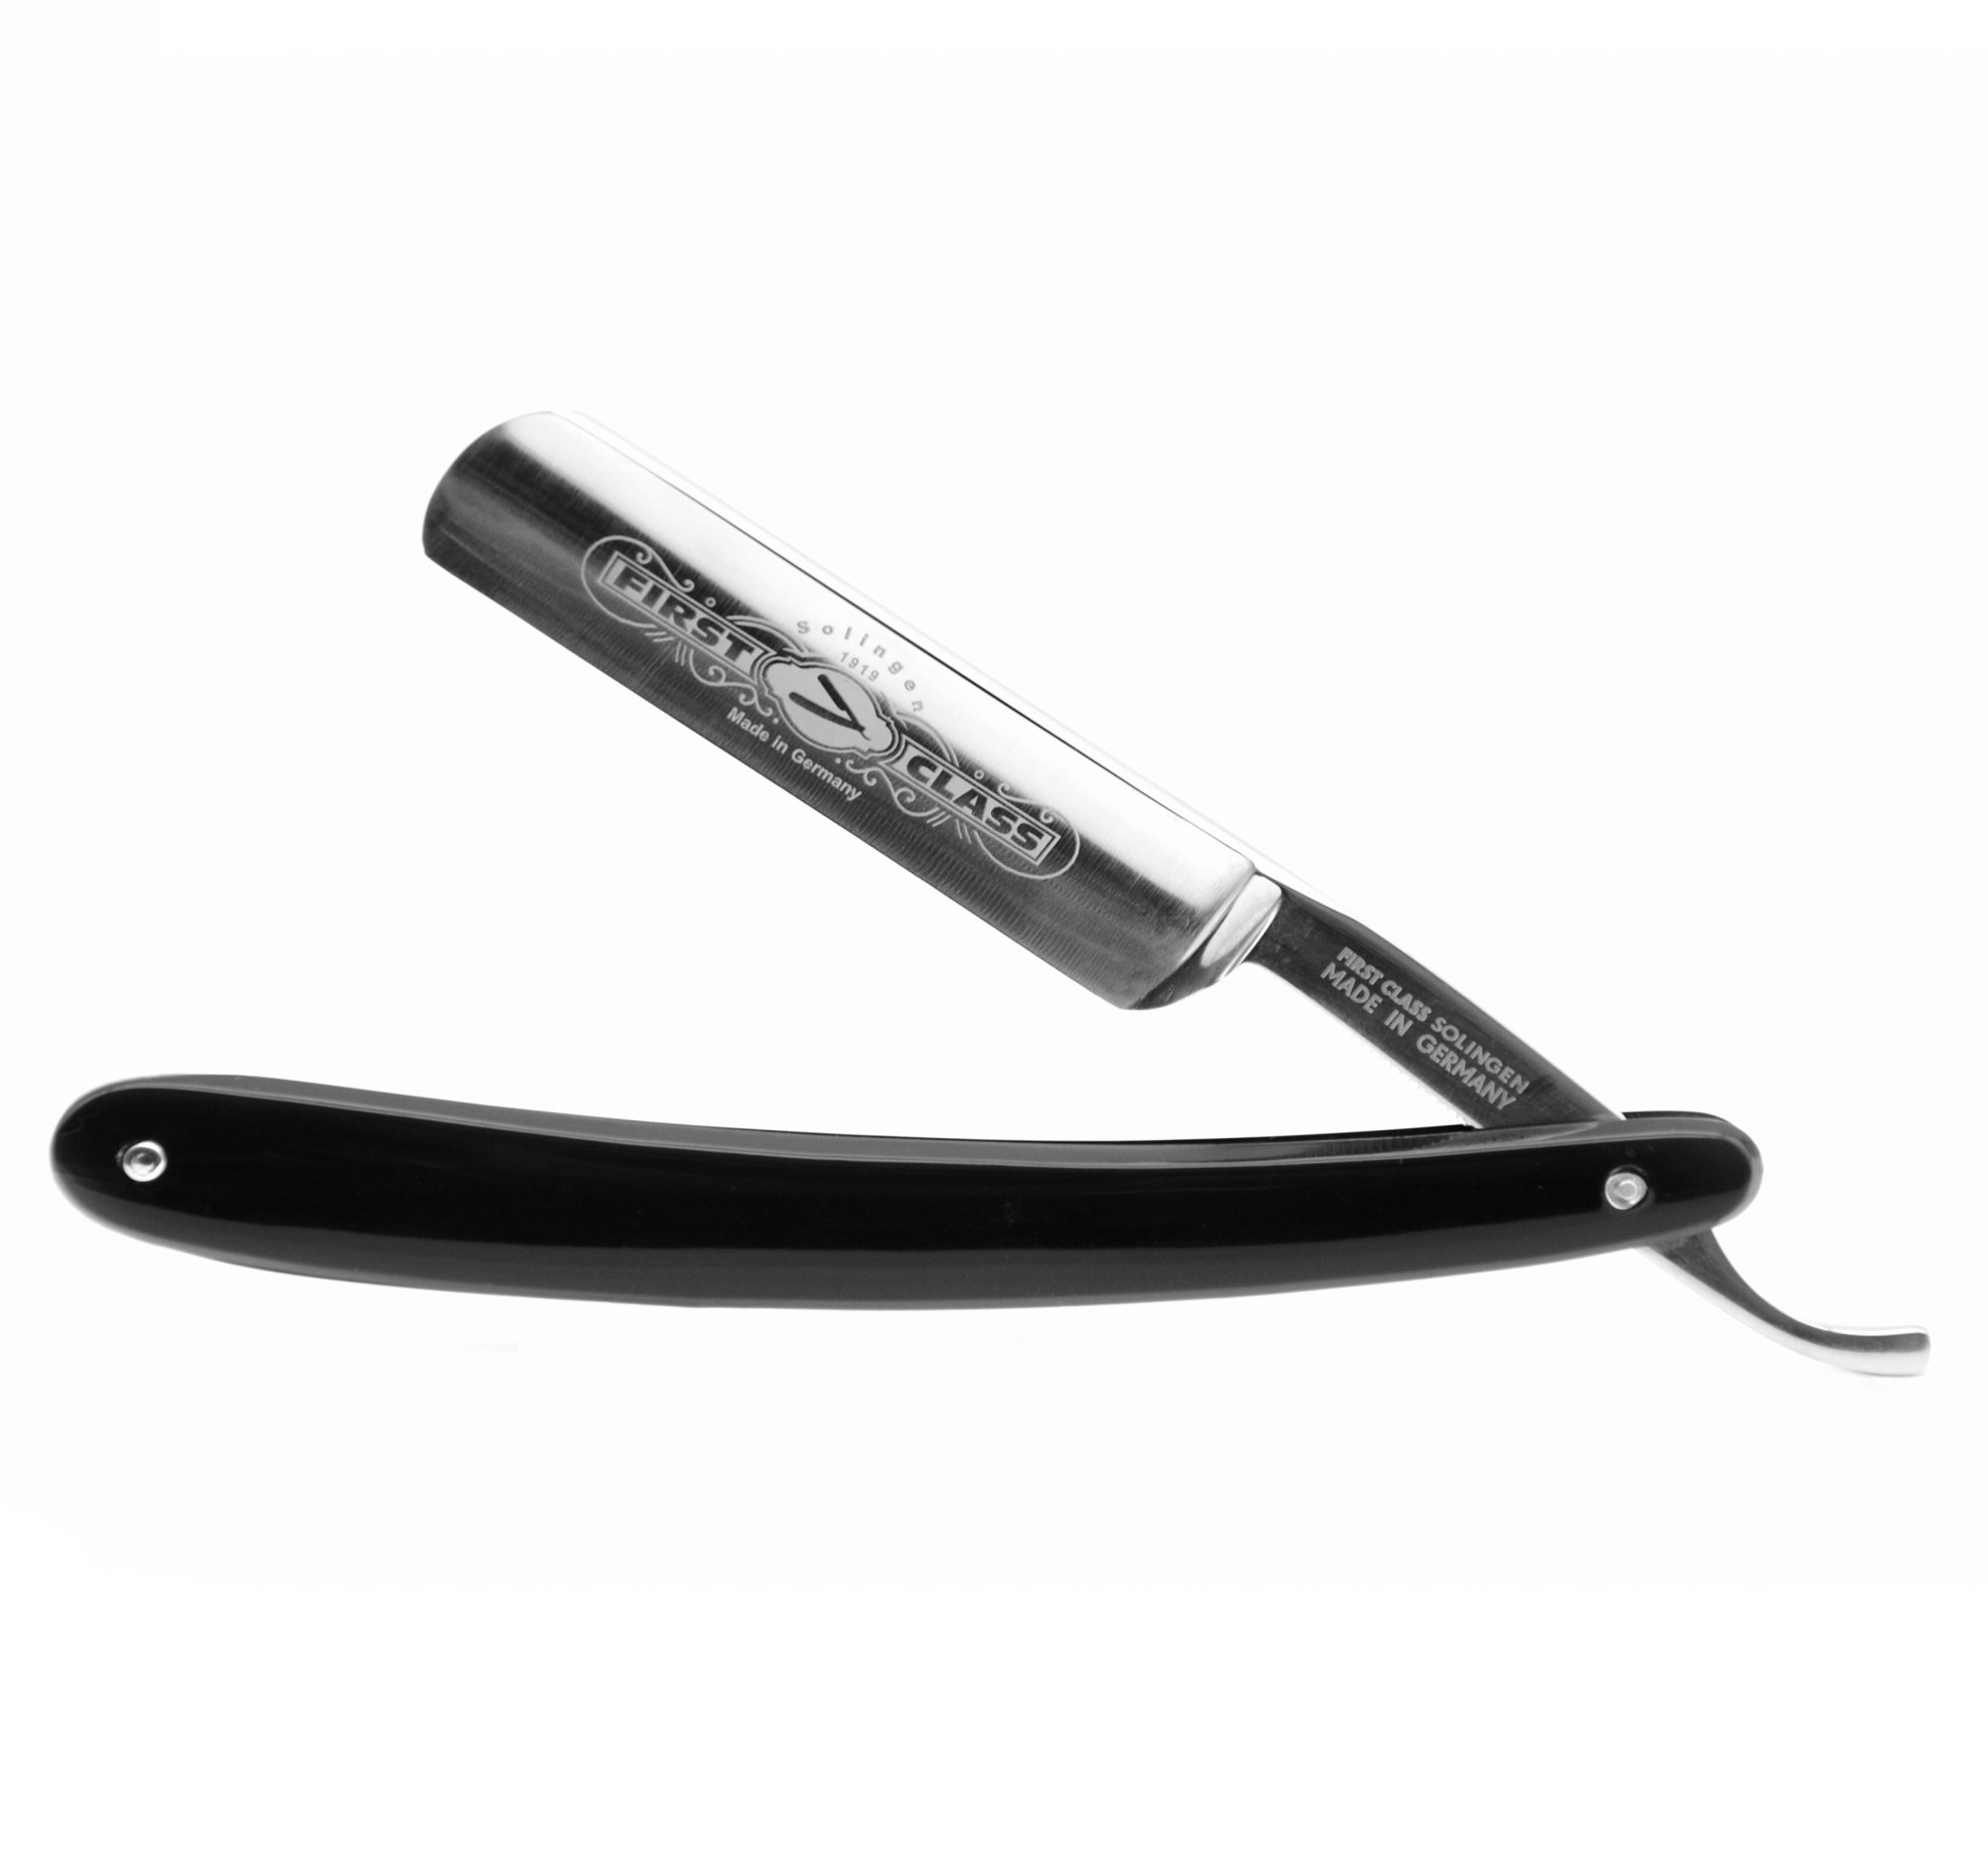 Heldenlounge - Carbonstahl Rasiermesser 5/8 Zoll - Griffschalen Kunststoff schwarz